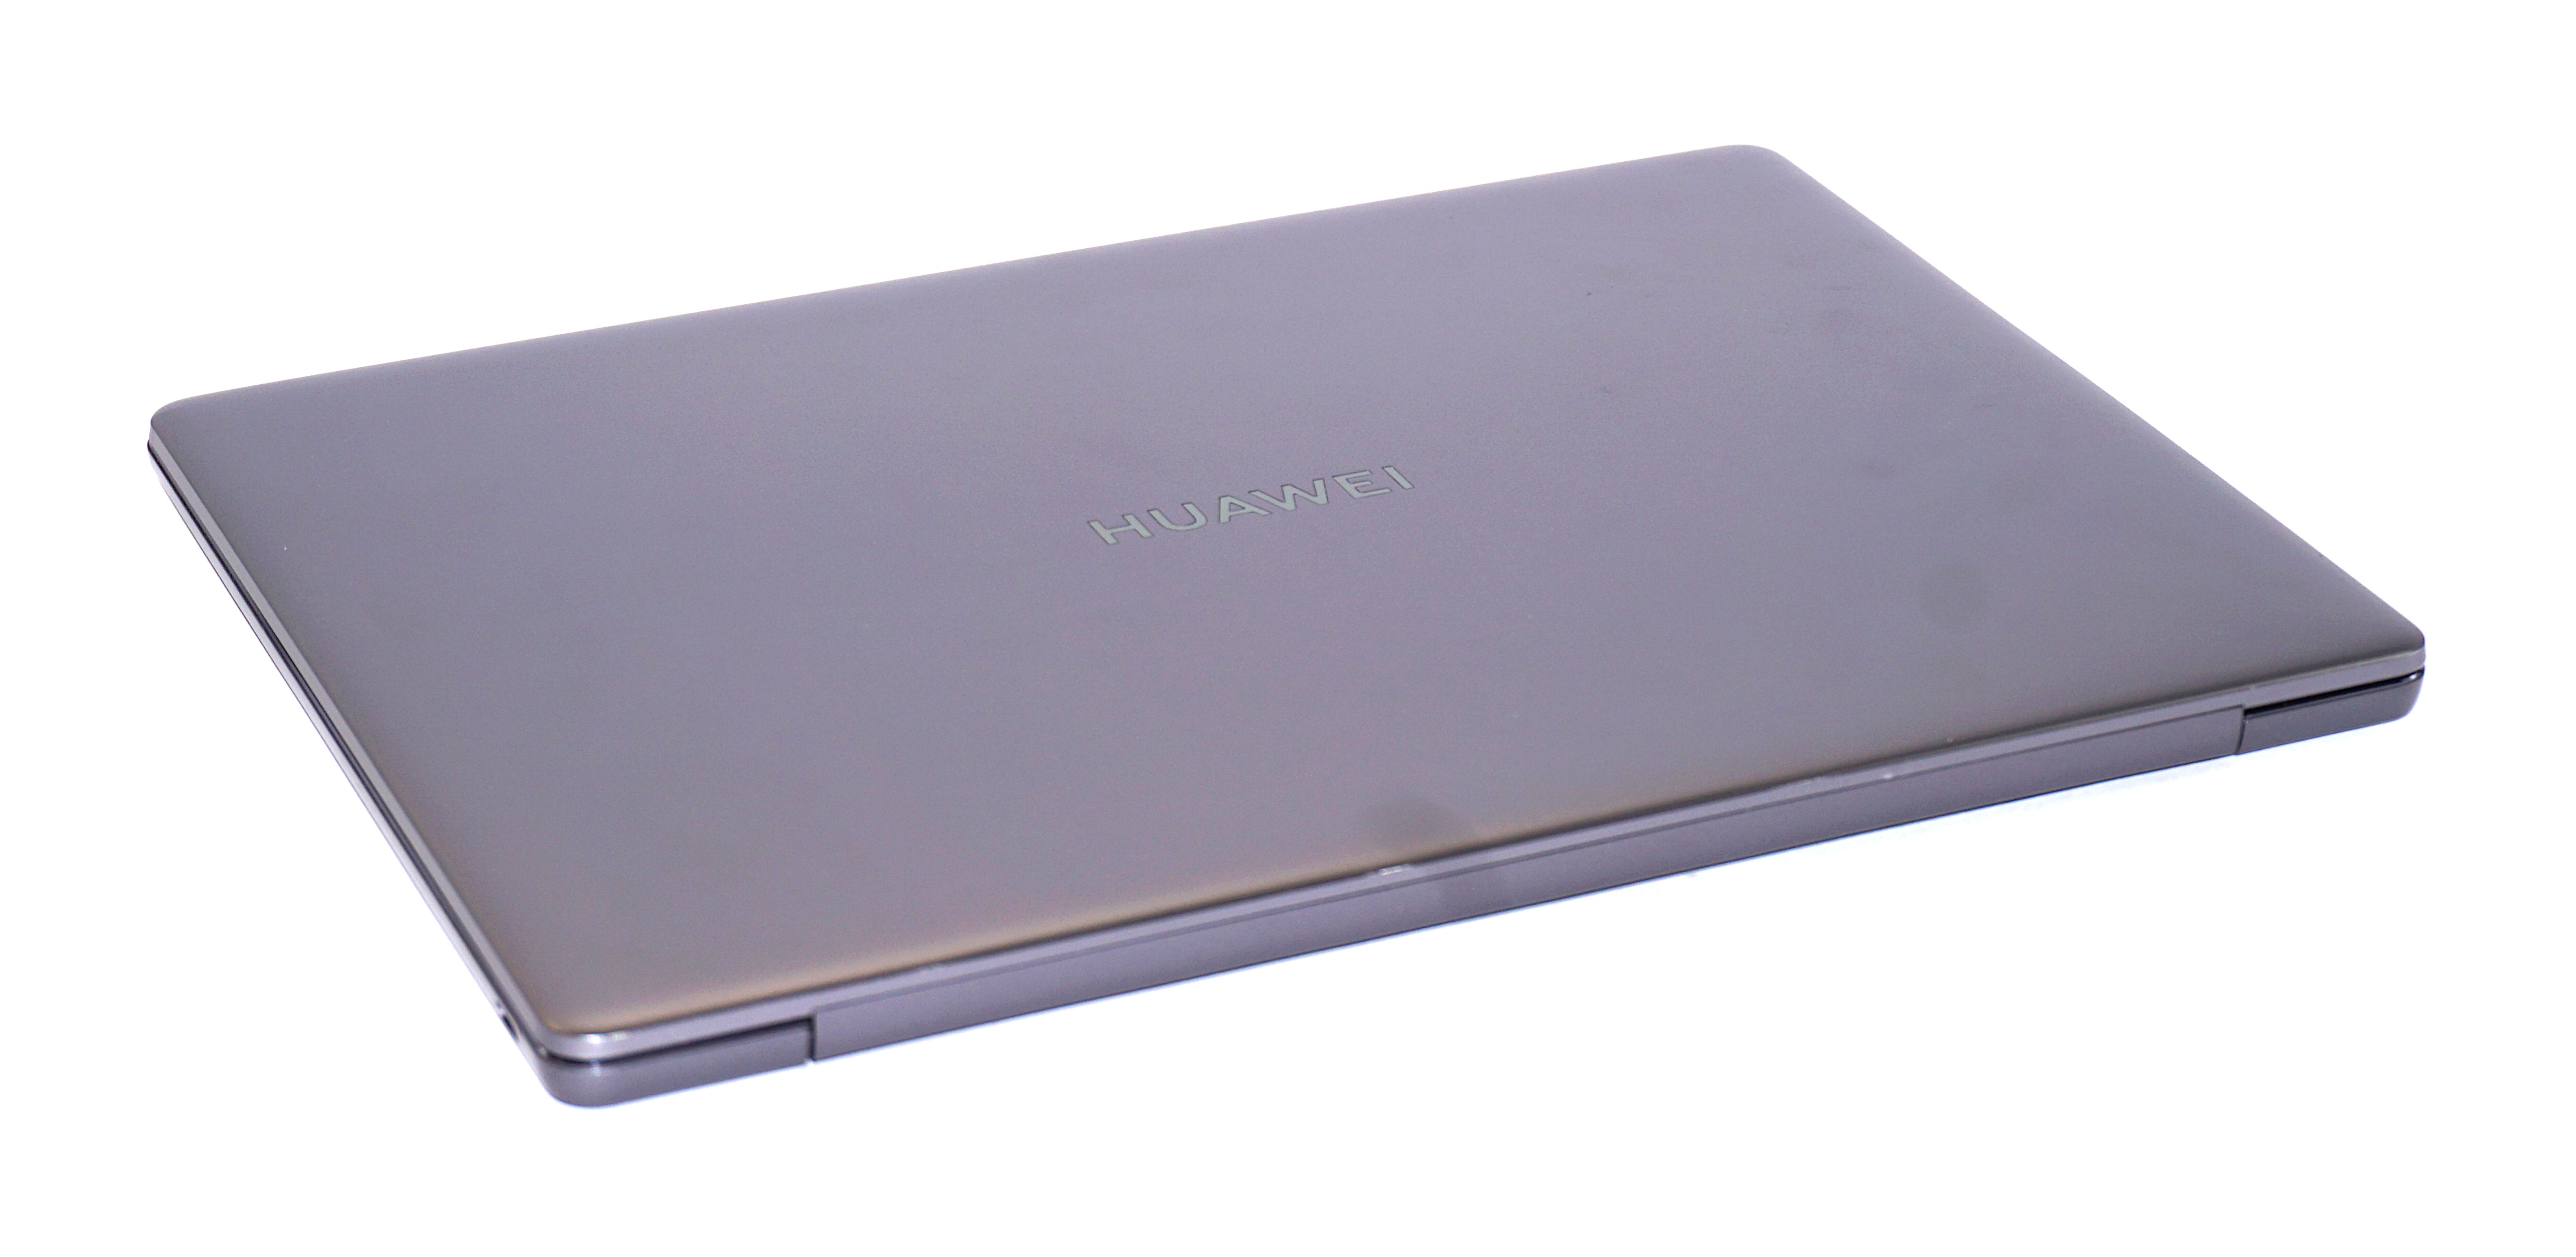 Huawei WRTB-WXX9 Laptop, 13" Intel Core i7, 16GB RAM, 512GB SSD